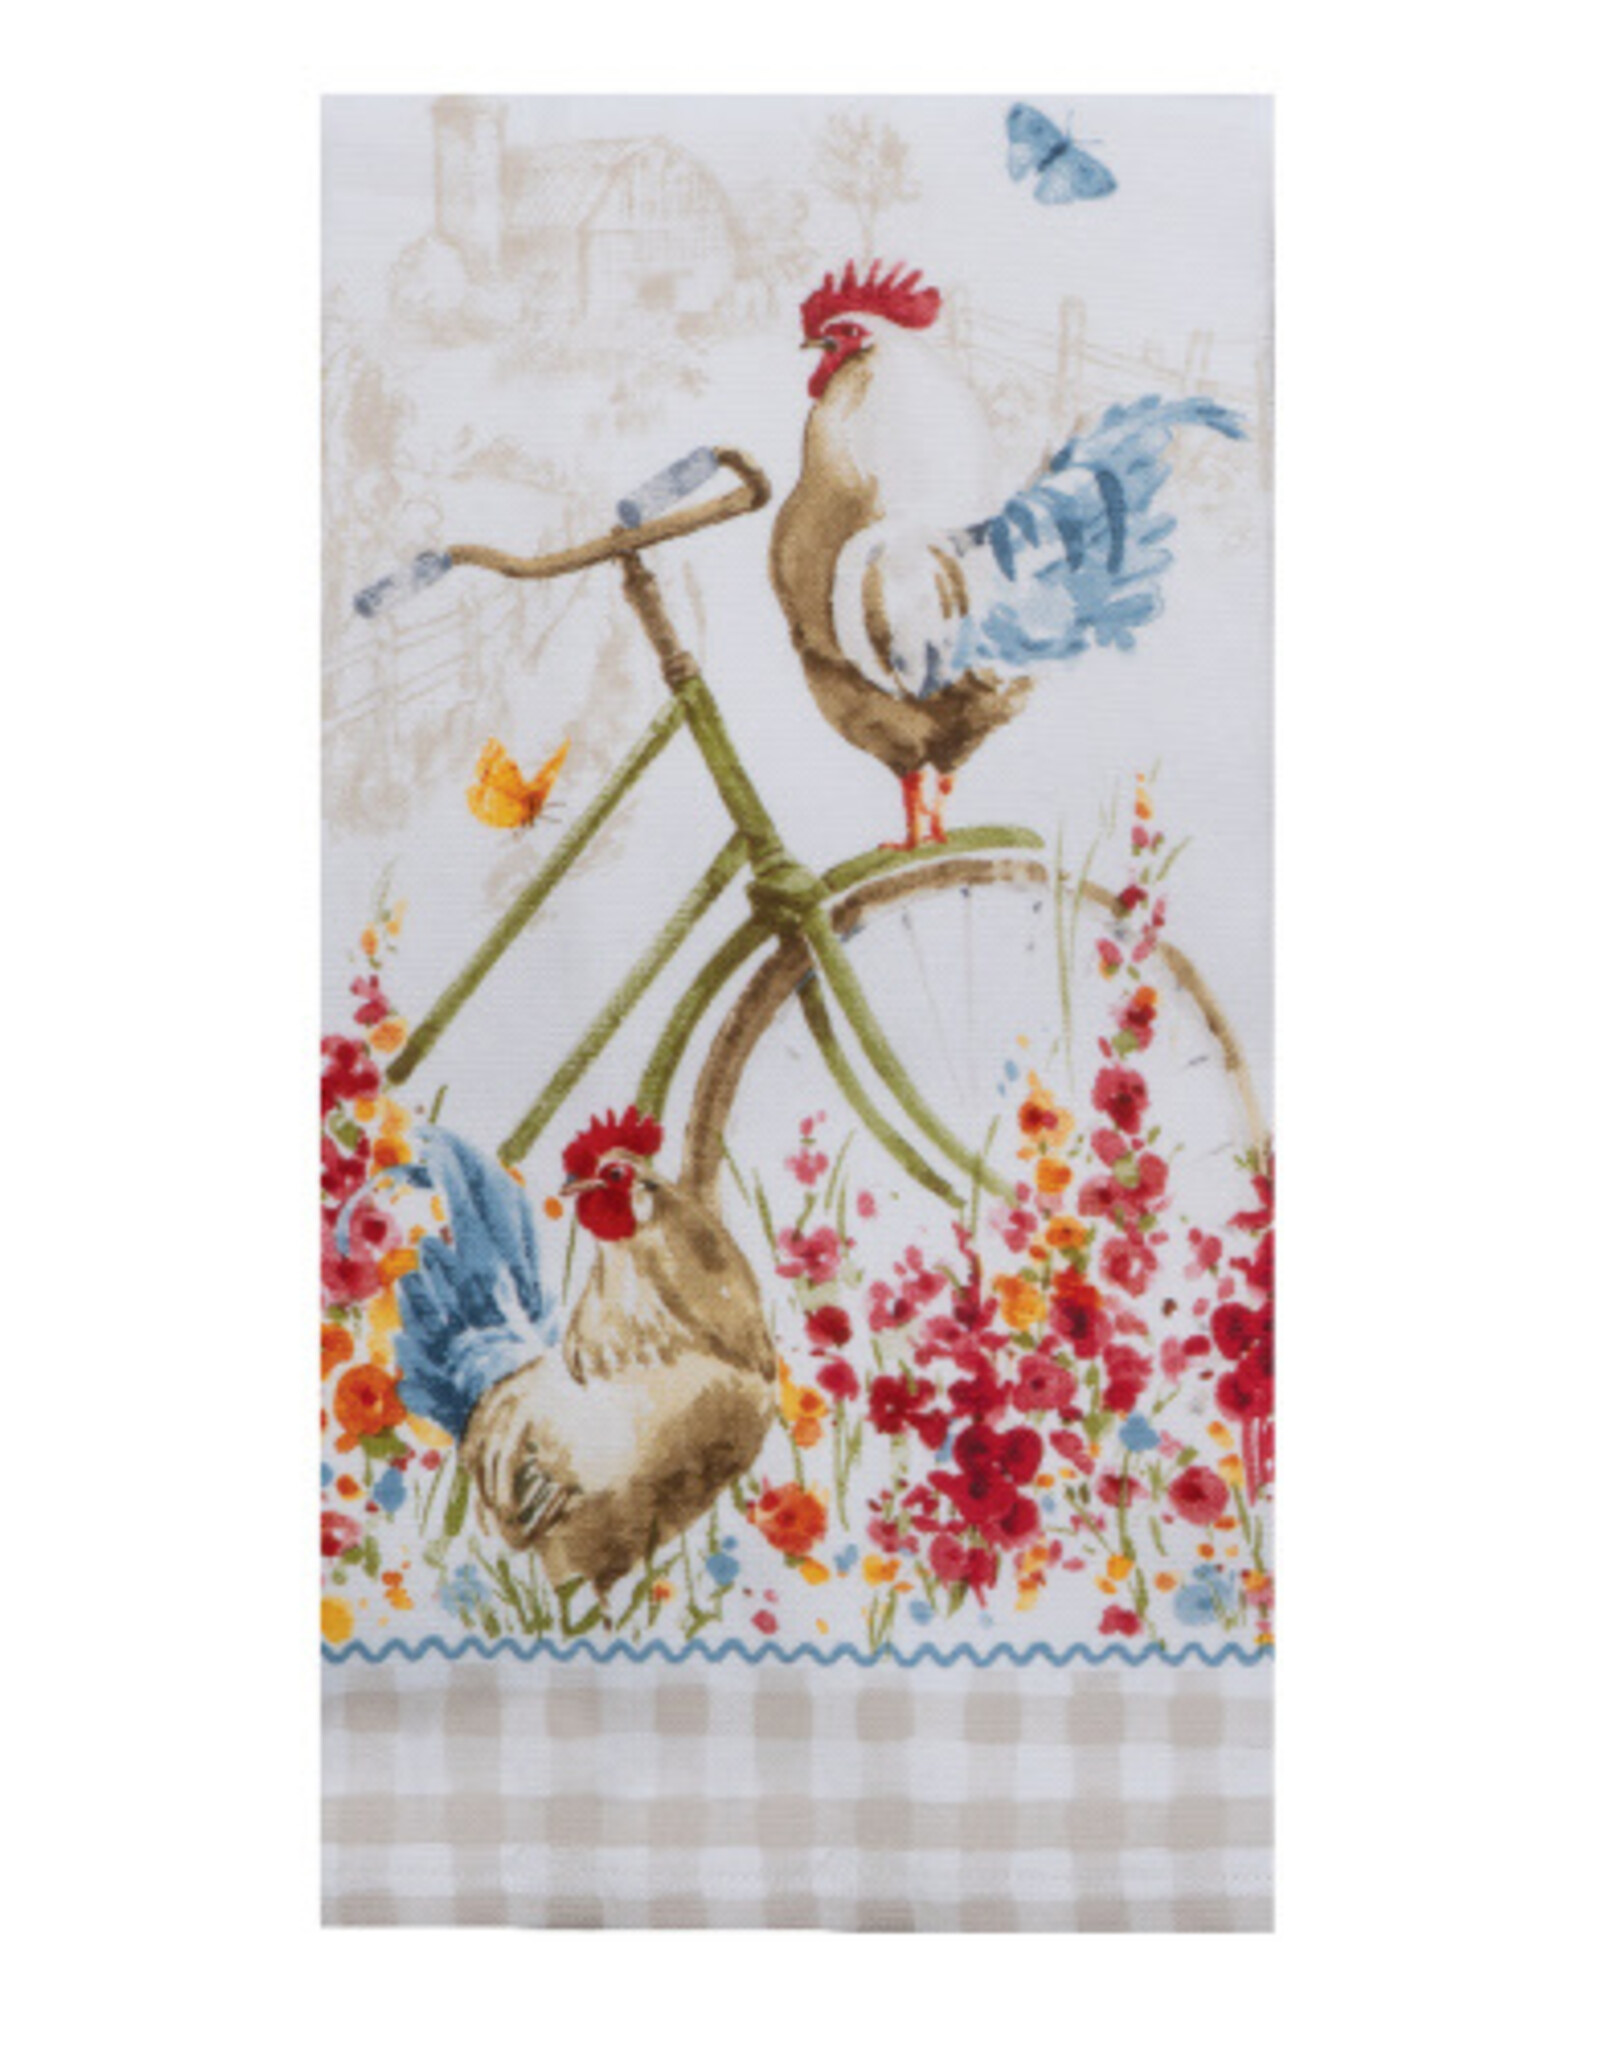 KayDee Terry Towel, CR Floral Bike